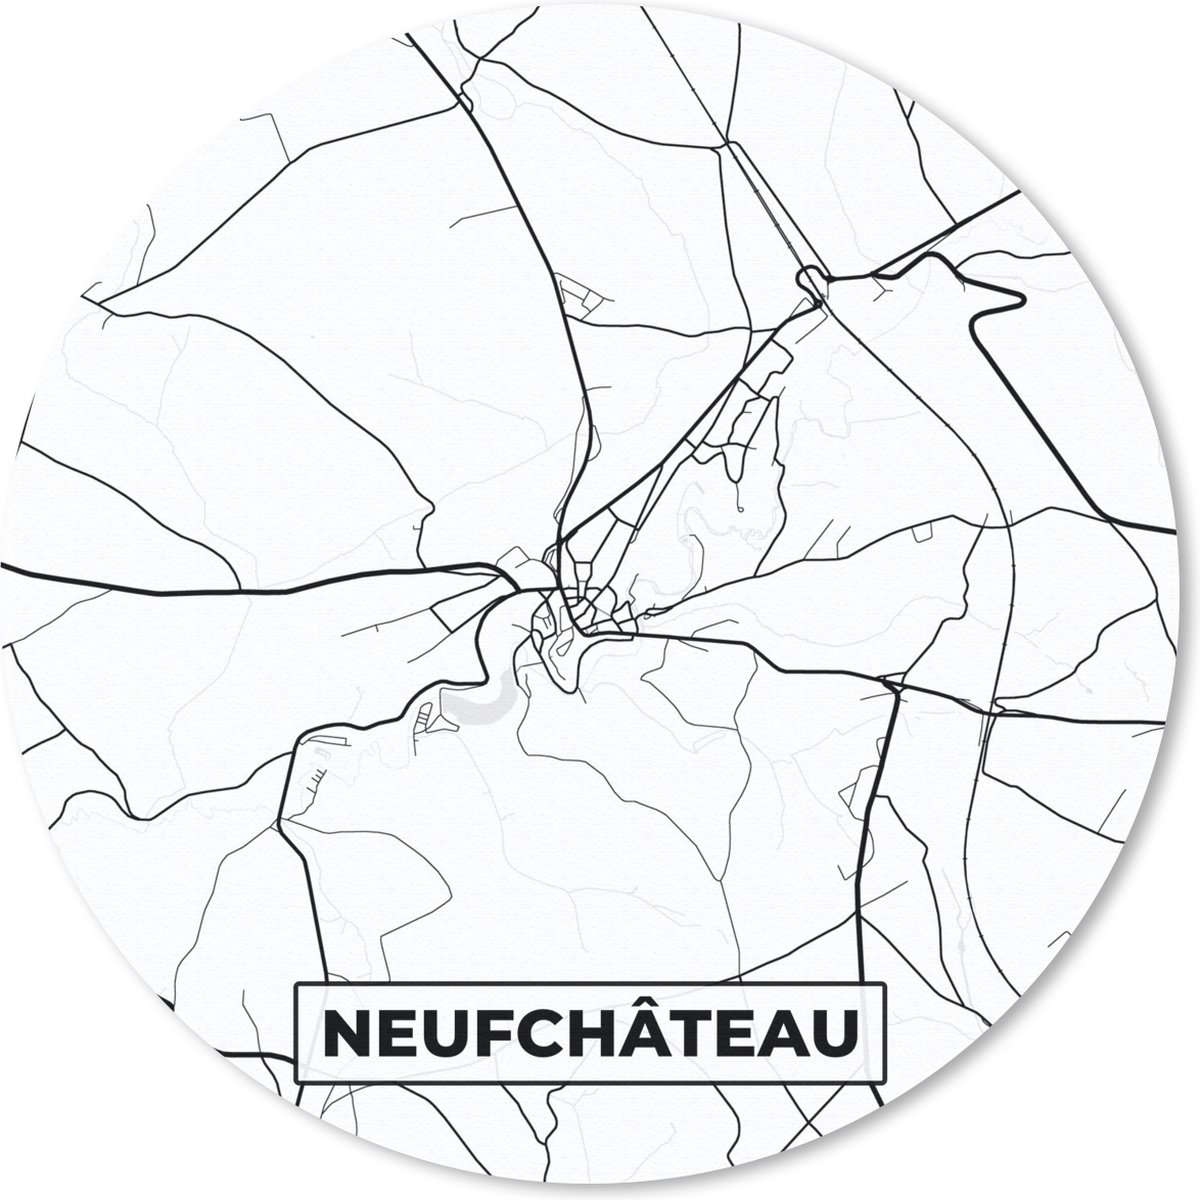 Muismat - Mousepad - Rond - Kaart – Plattegrond – Stadskaart – Neufchâteau – België – Zwart Wit - 50x50 cm - Ronde muismat